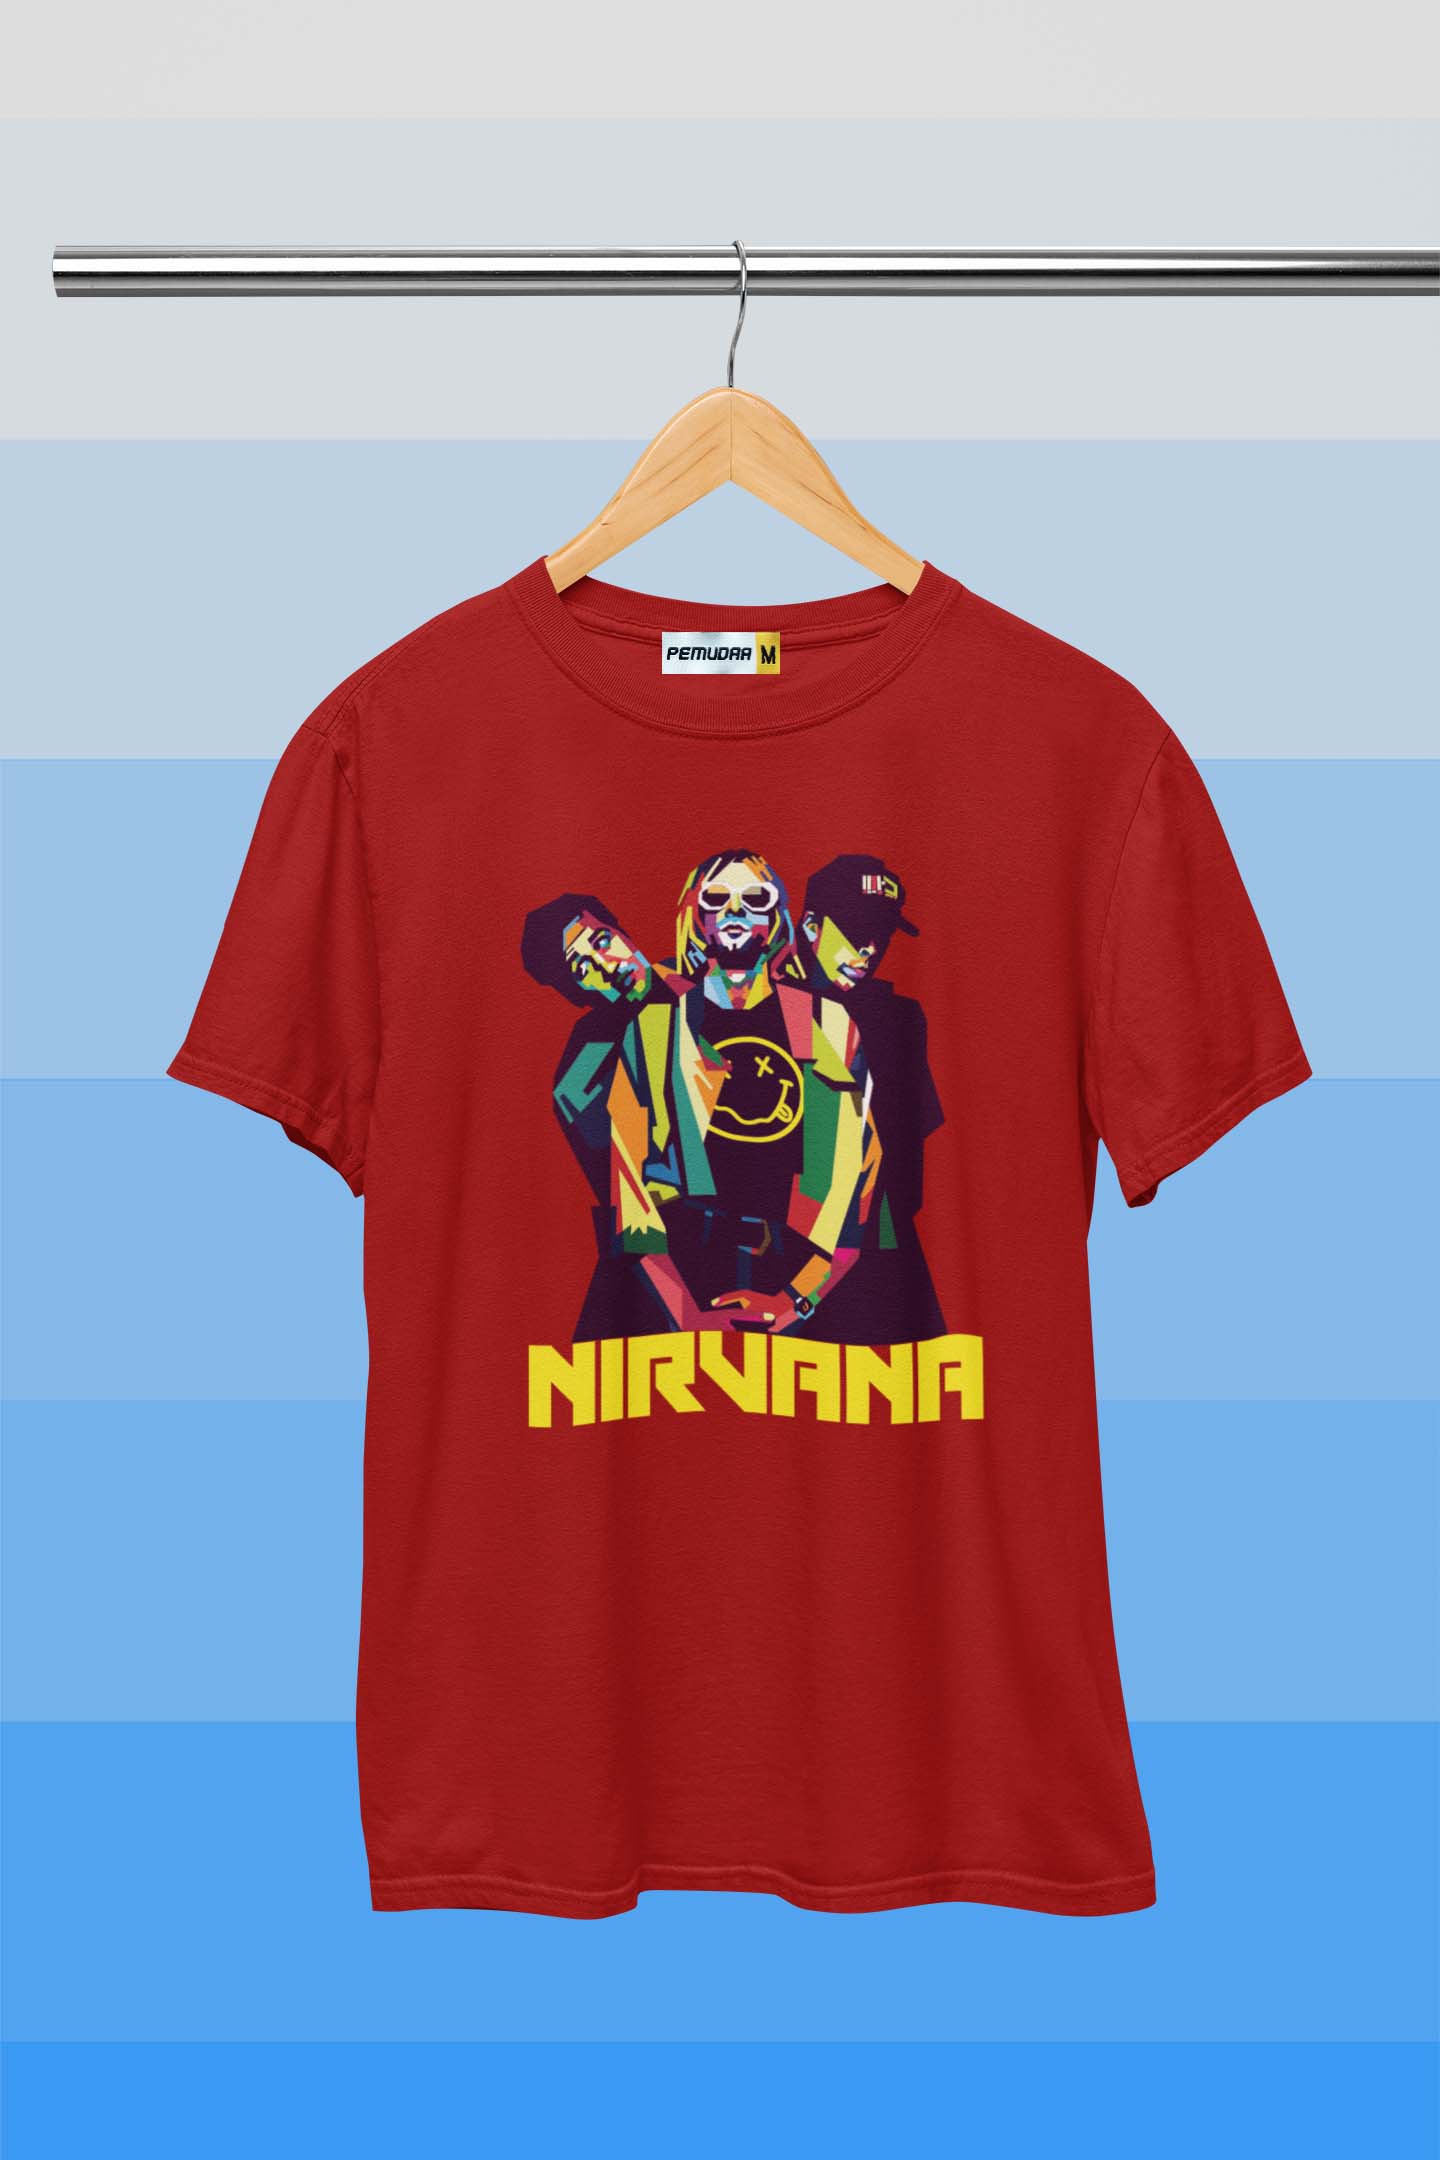 Nirvana Music Band Graphic Printed T Shirt - Cherry Red